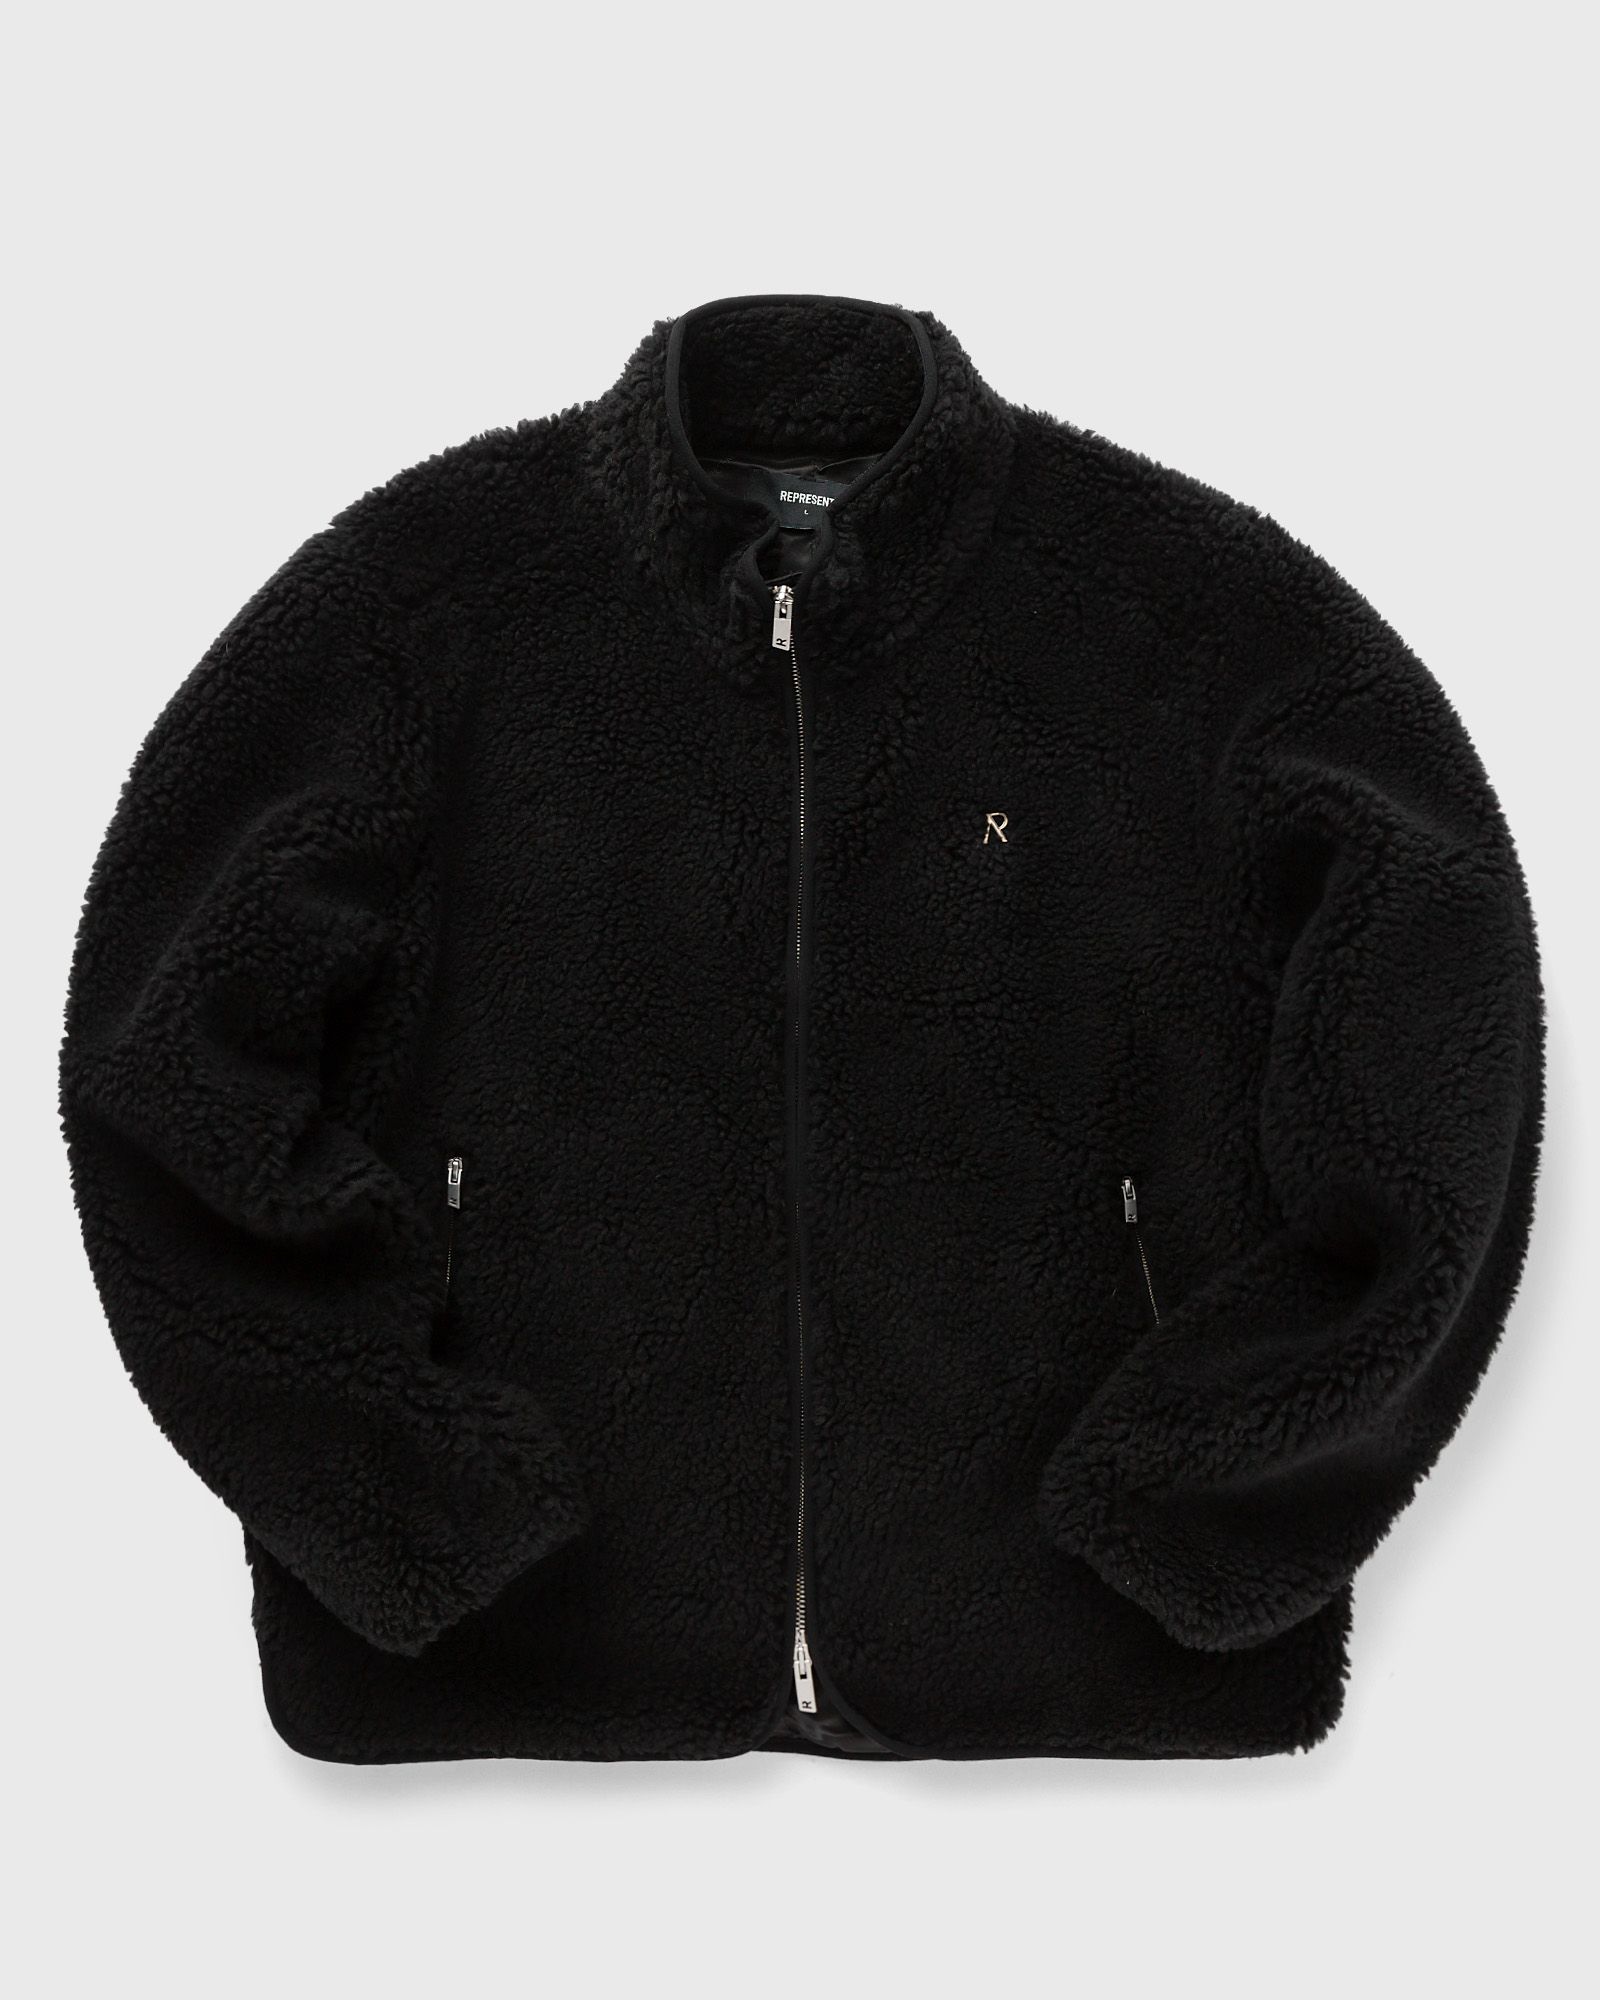 Represent - fleece zip through men fleece jackets black in größe:m